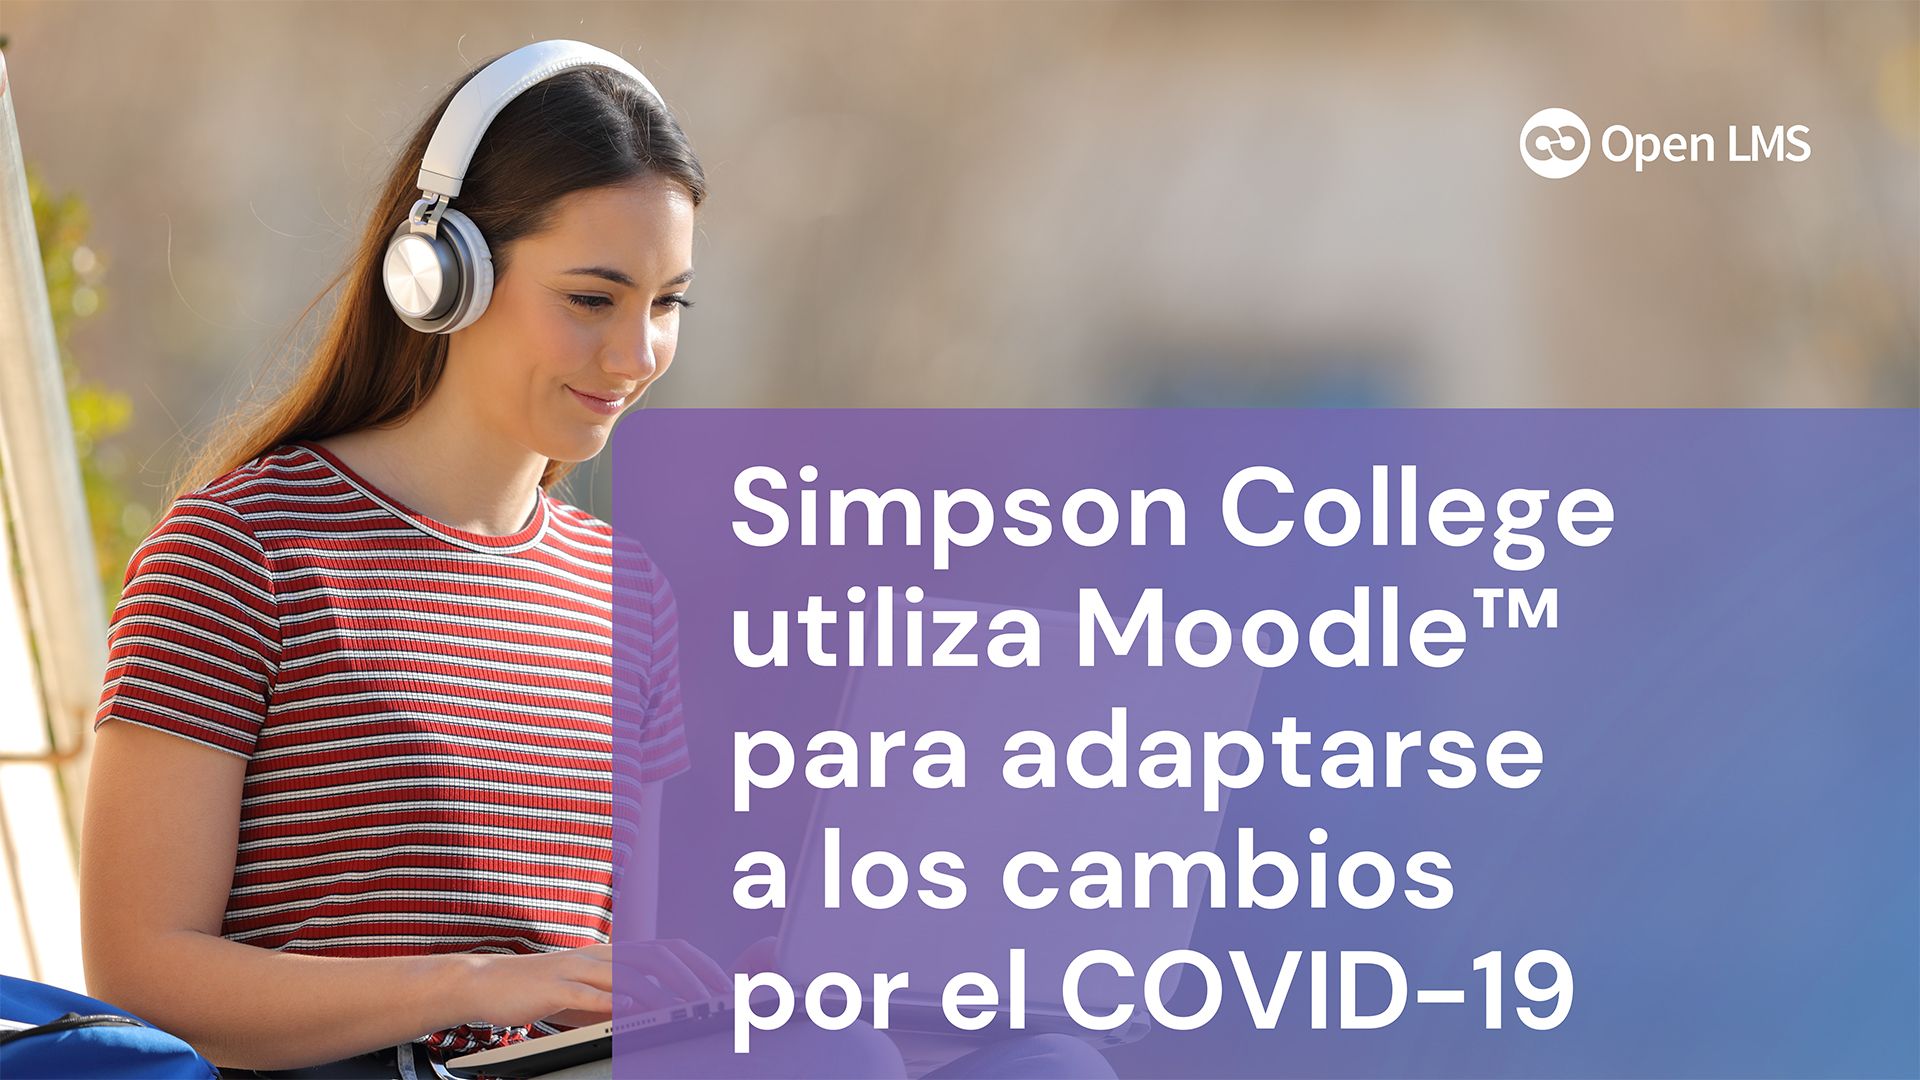 Simpson College utiliza Moodle™ para adaptarse a los cambios por el COVID-19